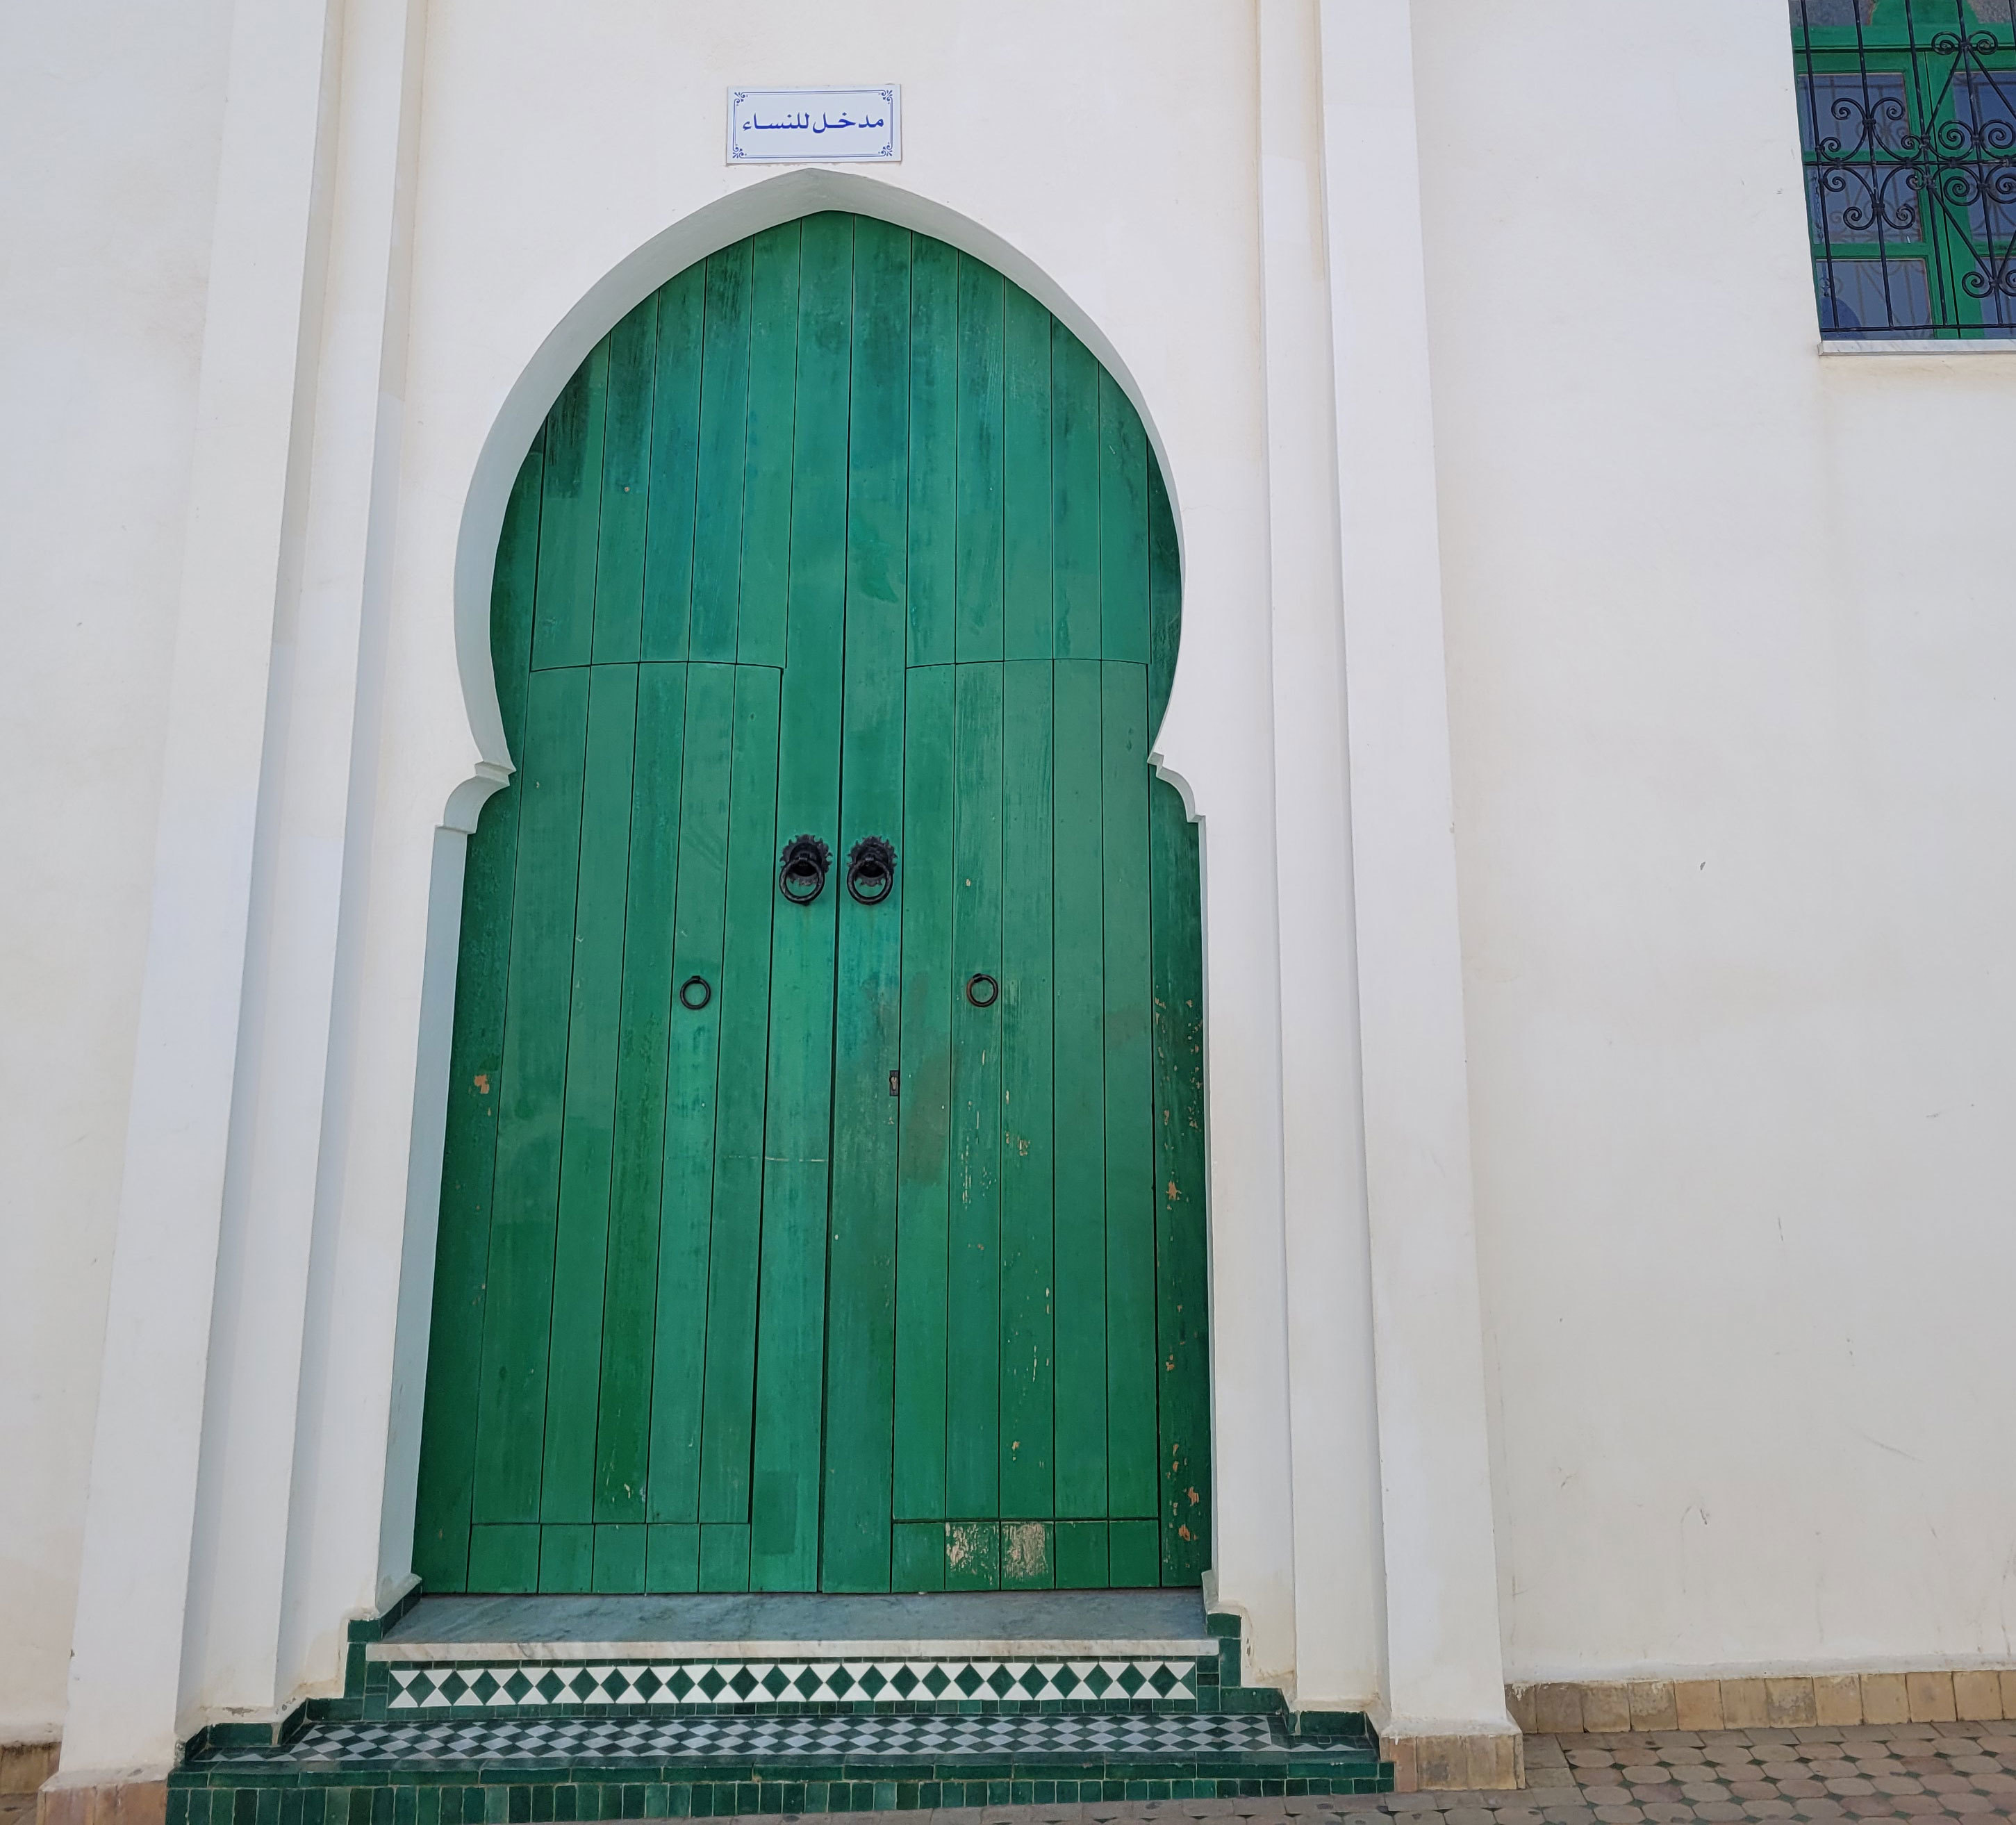 Clásica puerta de la ciudad marroquí.